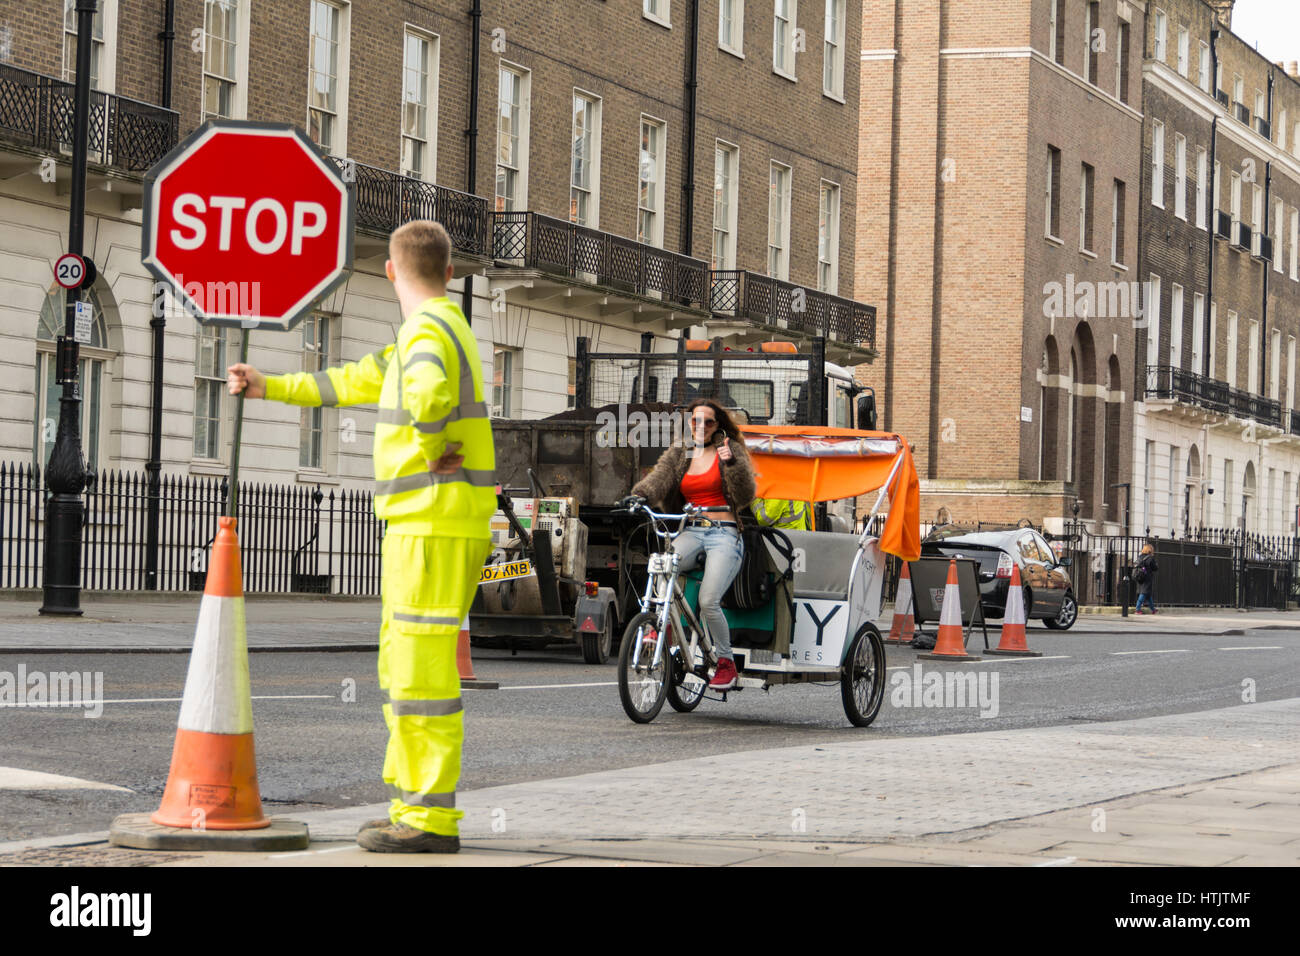 Ein Arbeiter in hochgekleidter Kleidung mit einem Stoppschild in einer ruhigen Londoner Straße in Bloomsbury, England, Großbritannien Stockfoto